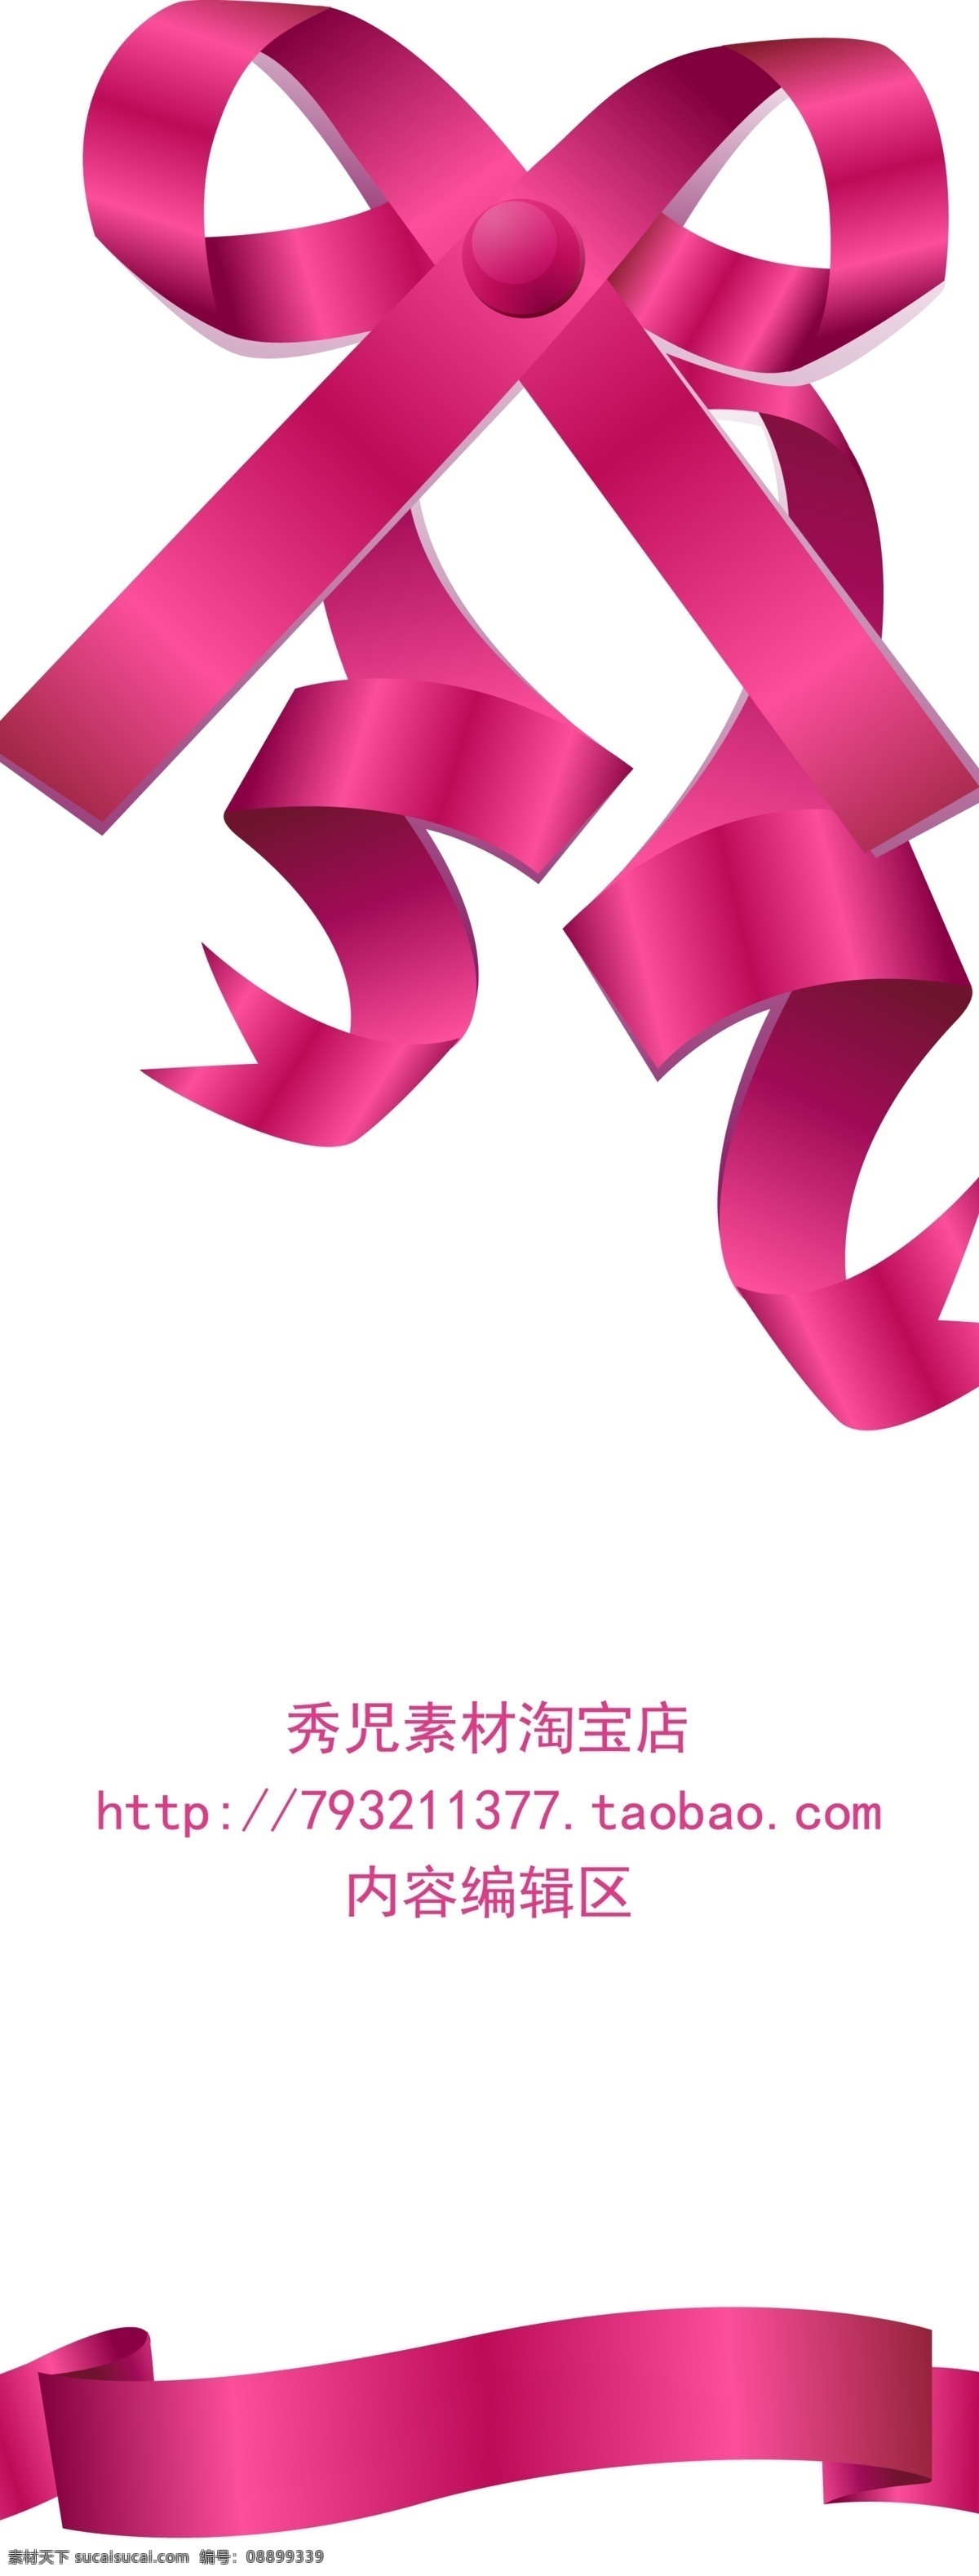 粉色 中国结 展架 模板 粉色中国结 中国结素材 精美 展架设计 精美展架设计 展架海报 海报素材 精美展架 x展架 x展架设计 白色